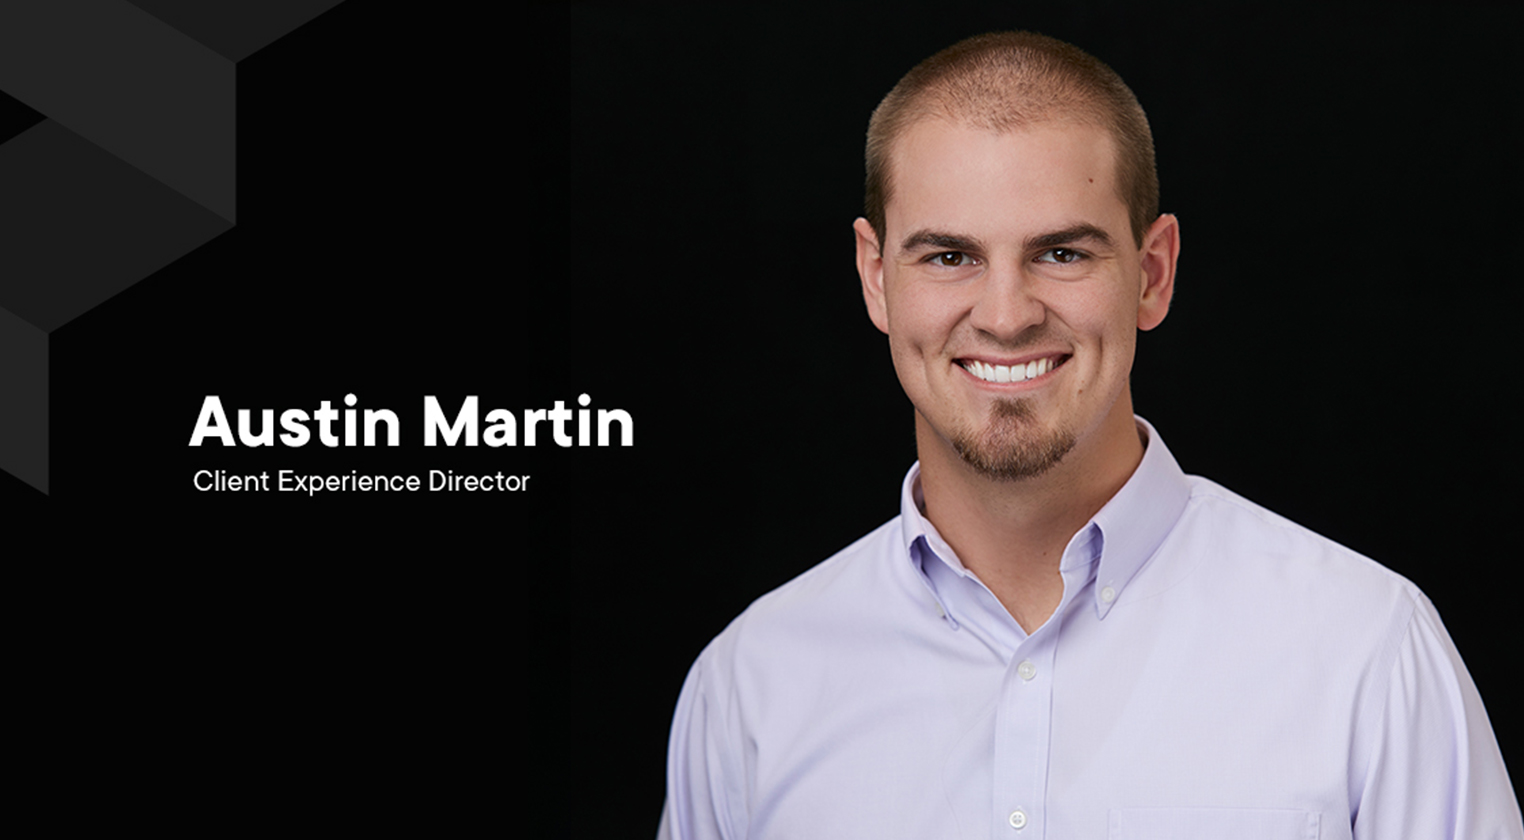 Meet Austin Martin